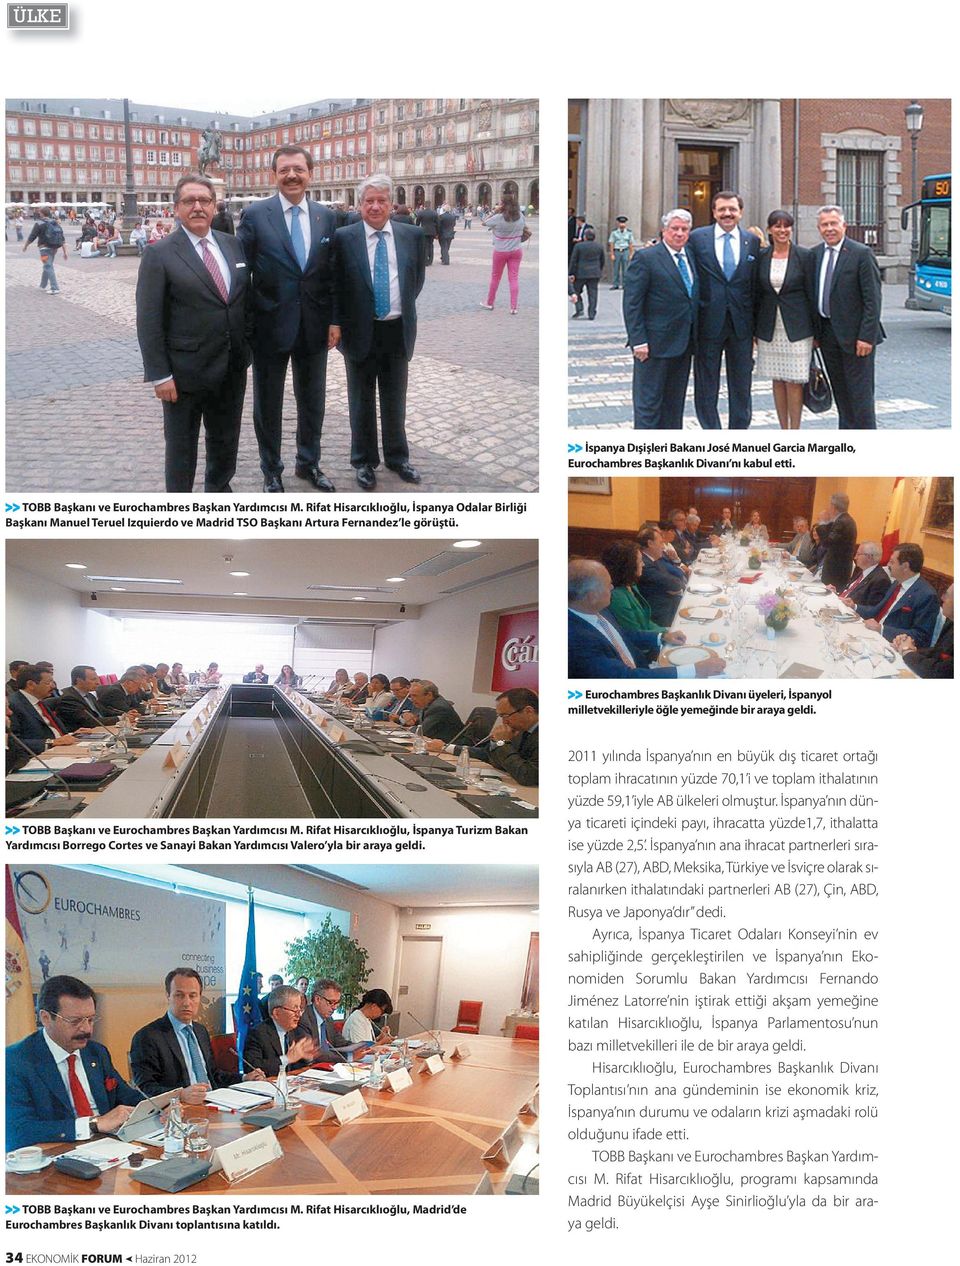 > > Eurochambres Başkanlık Divanı üyeleri, İspanyol milletvekilleriyle öğle yemeğinde bir araya geldi. > > TOBB Başkanı ve Eurochambres Başkan Yardımcısı M.